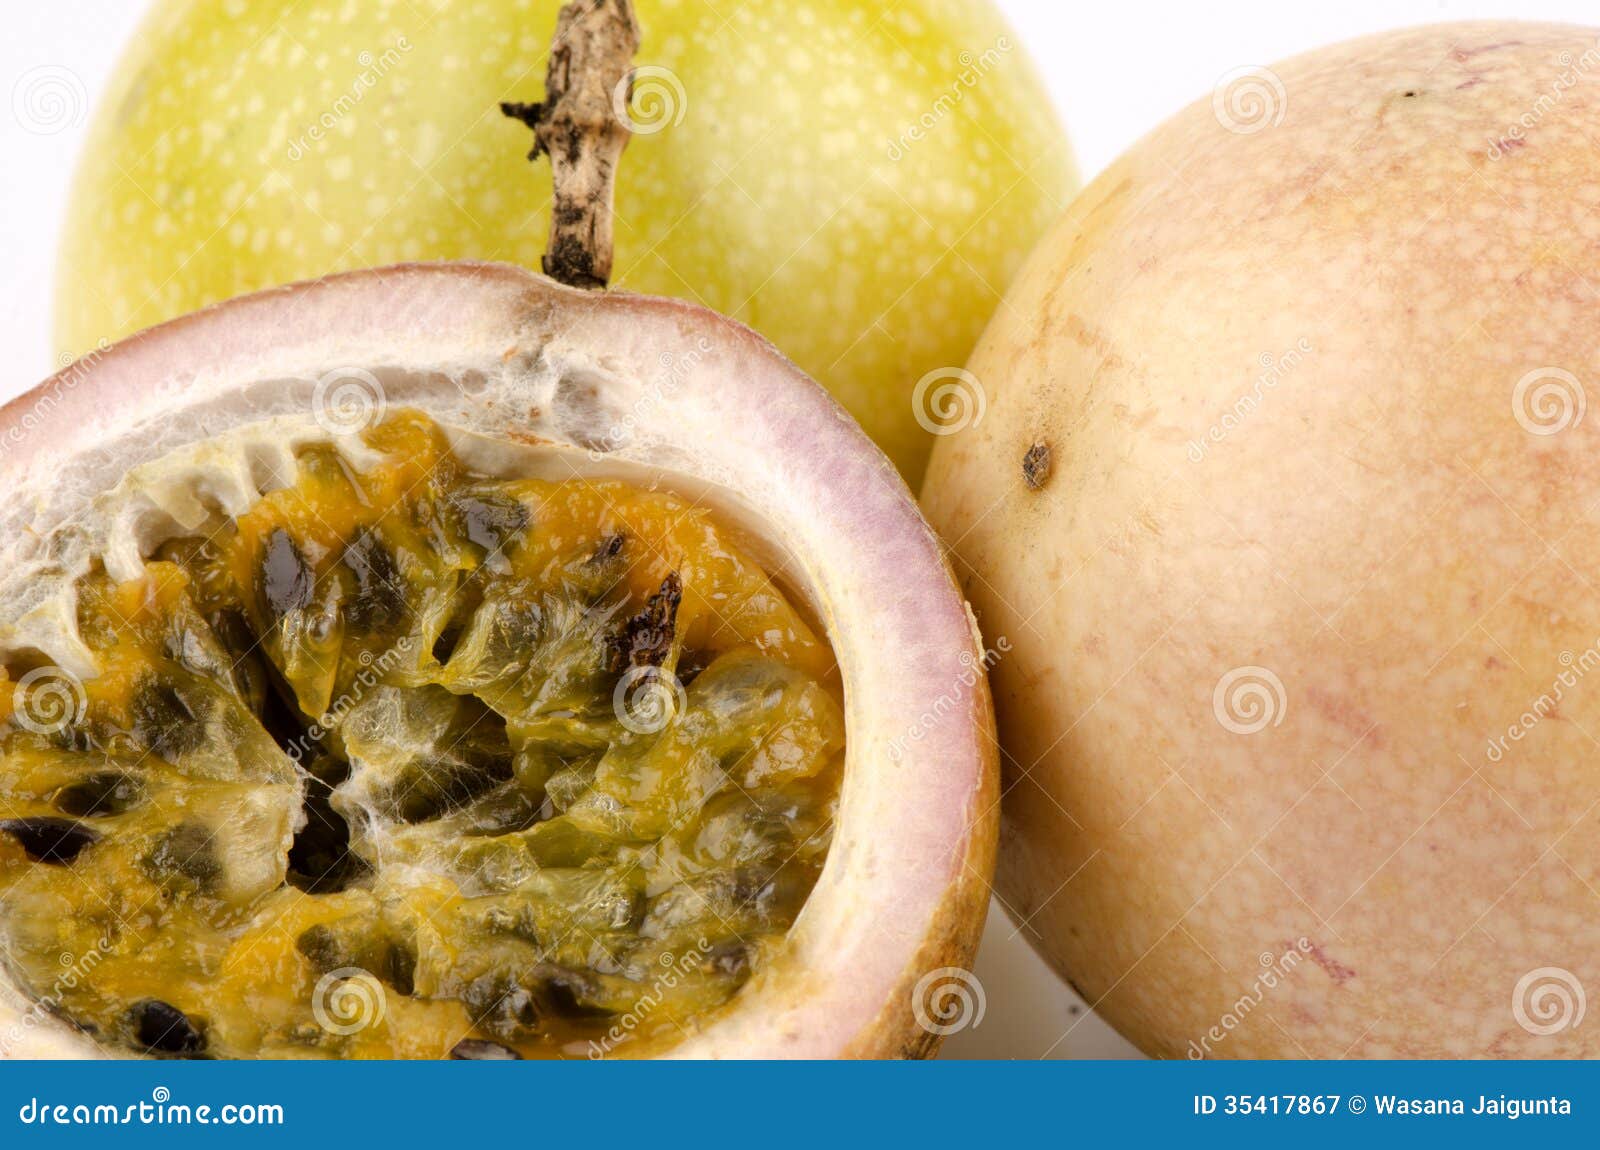 passion fruit (passiflora edulis)